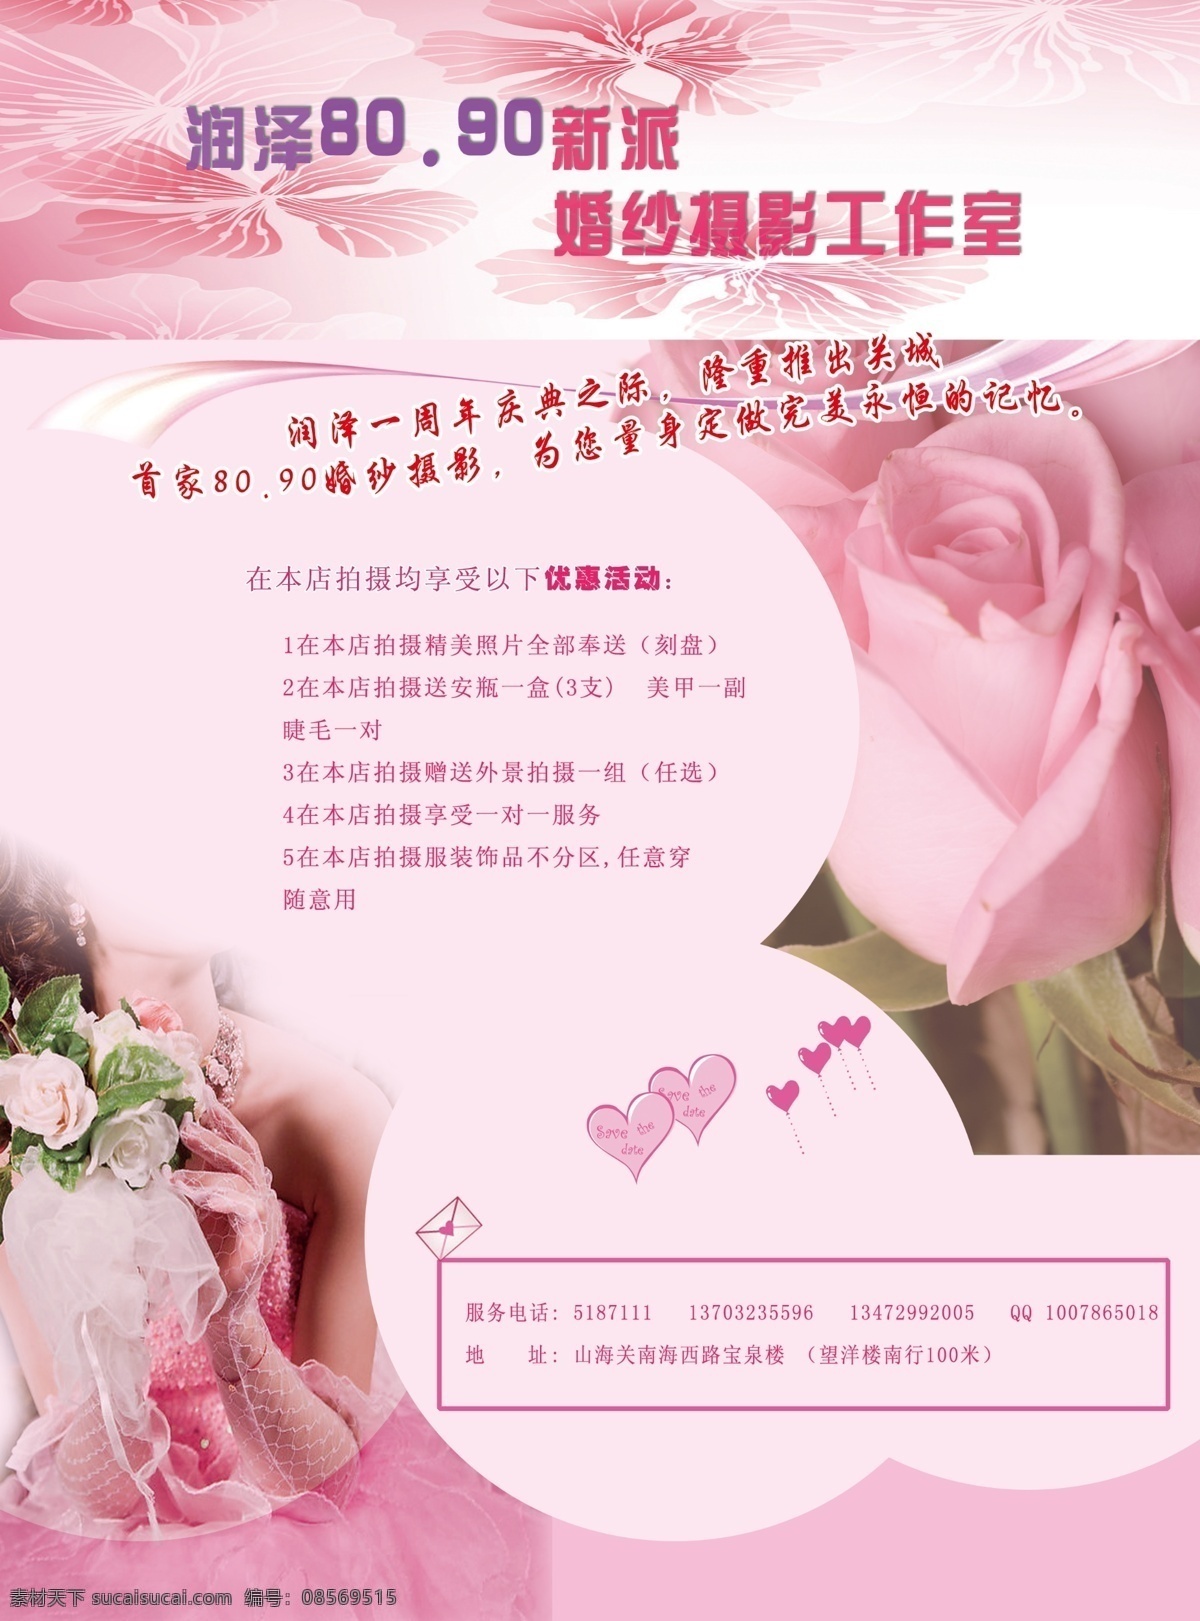 dm宣传单 粉色 广告设计模板 玫瑰 新娘 源文件 婚纱 店 宣传单 模板下载 婚纱店宣传单